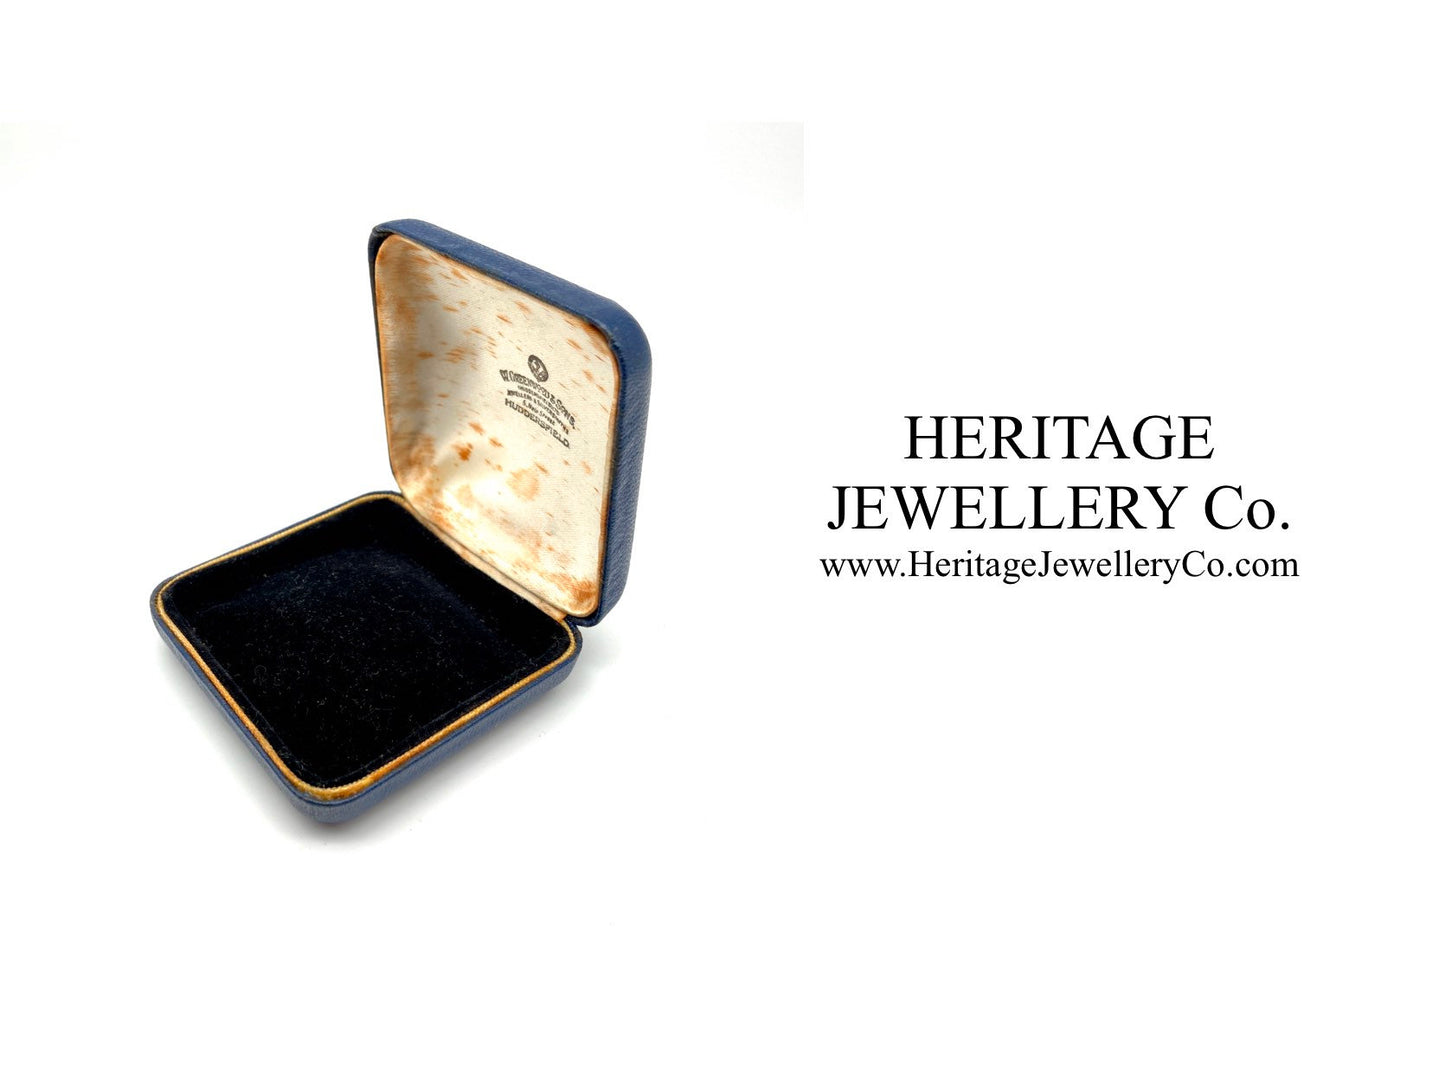 Vintage Leather Jewellery Box